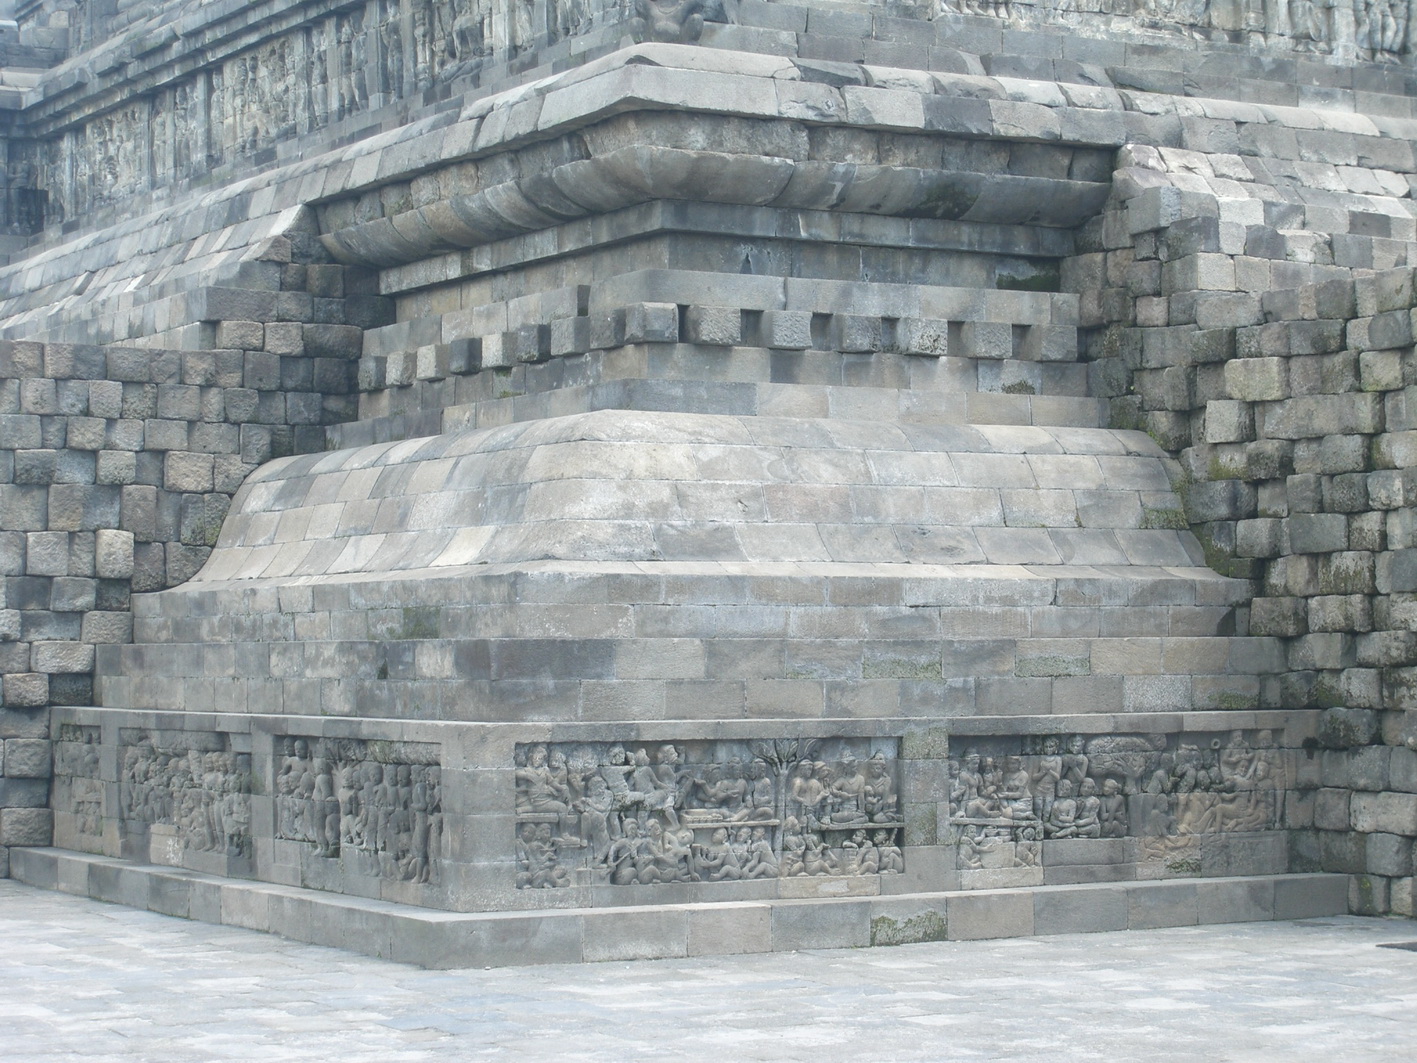 Adakah Rahasia yang Tersembunyi? Relief Candi yang Dibangun Samaratungga Raja Mataram Kuno Ini Ditutup? 